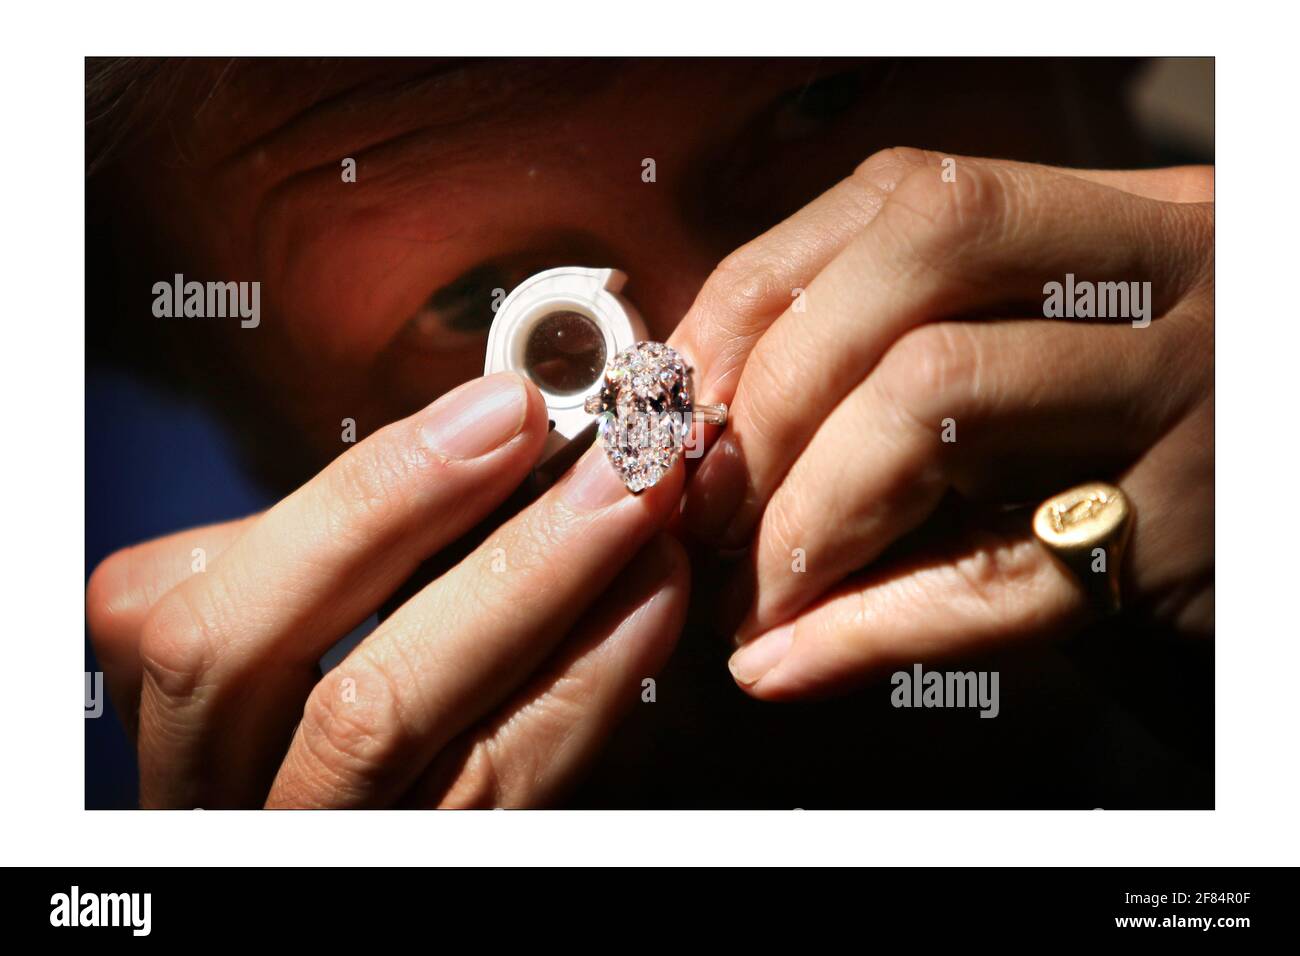 Gioielli vintage e diamanti brillano al Christie's di Londra. Una selezione dalla collezione di Christina Onassis sarà il momento culminante. Un esperto ispeziona l'anello di diamante di 14.79 carati da Harry Winston. I gioielli sono in vendita all'asta il 11 giugno. Fotografia di David Sandison The Independent Foto Stock